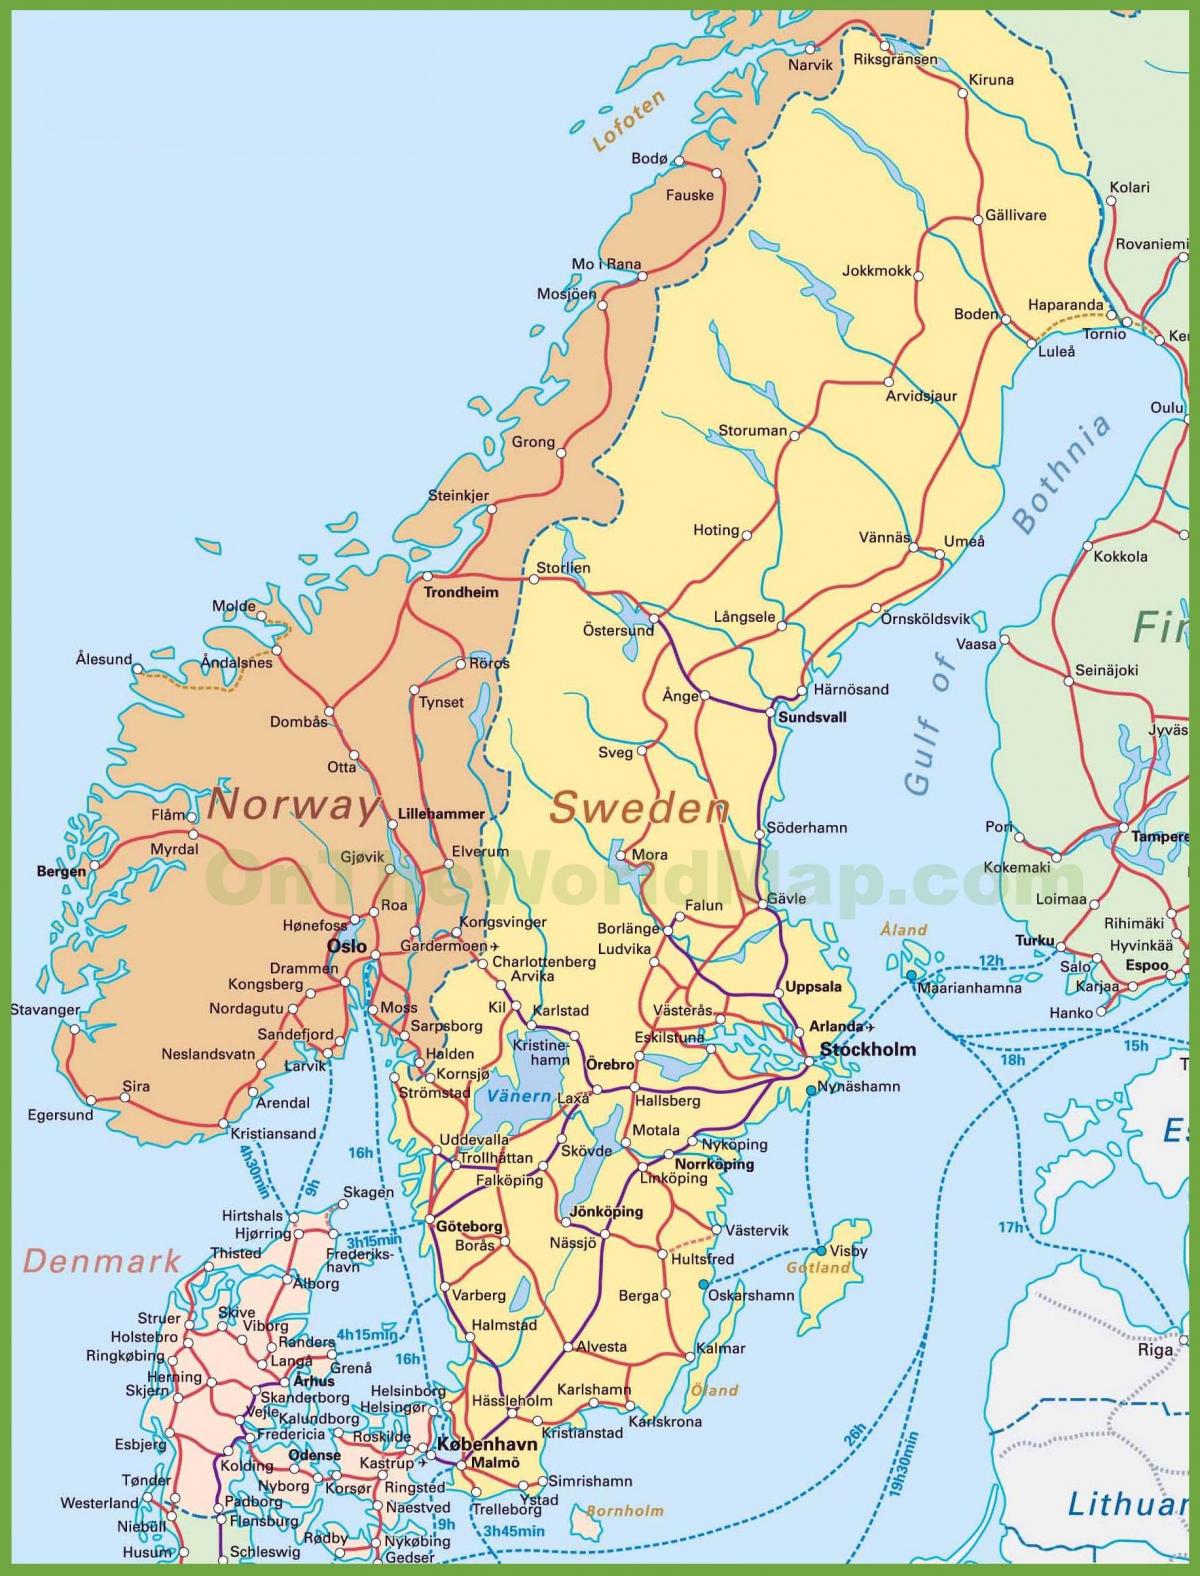 zemljevid danske in norveške